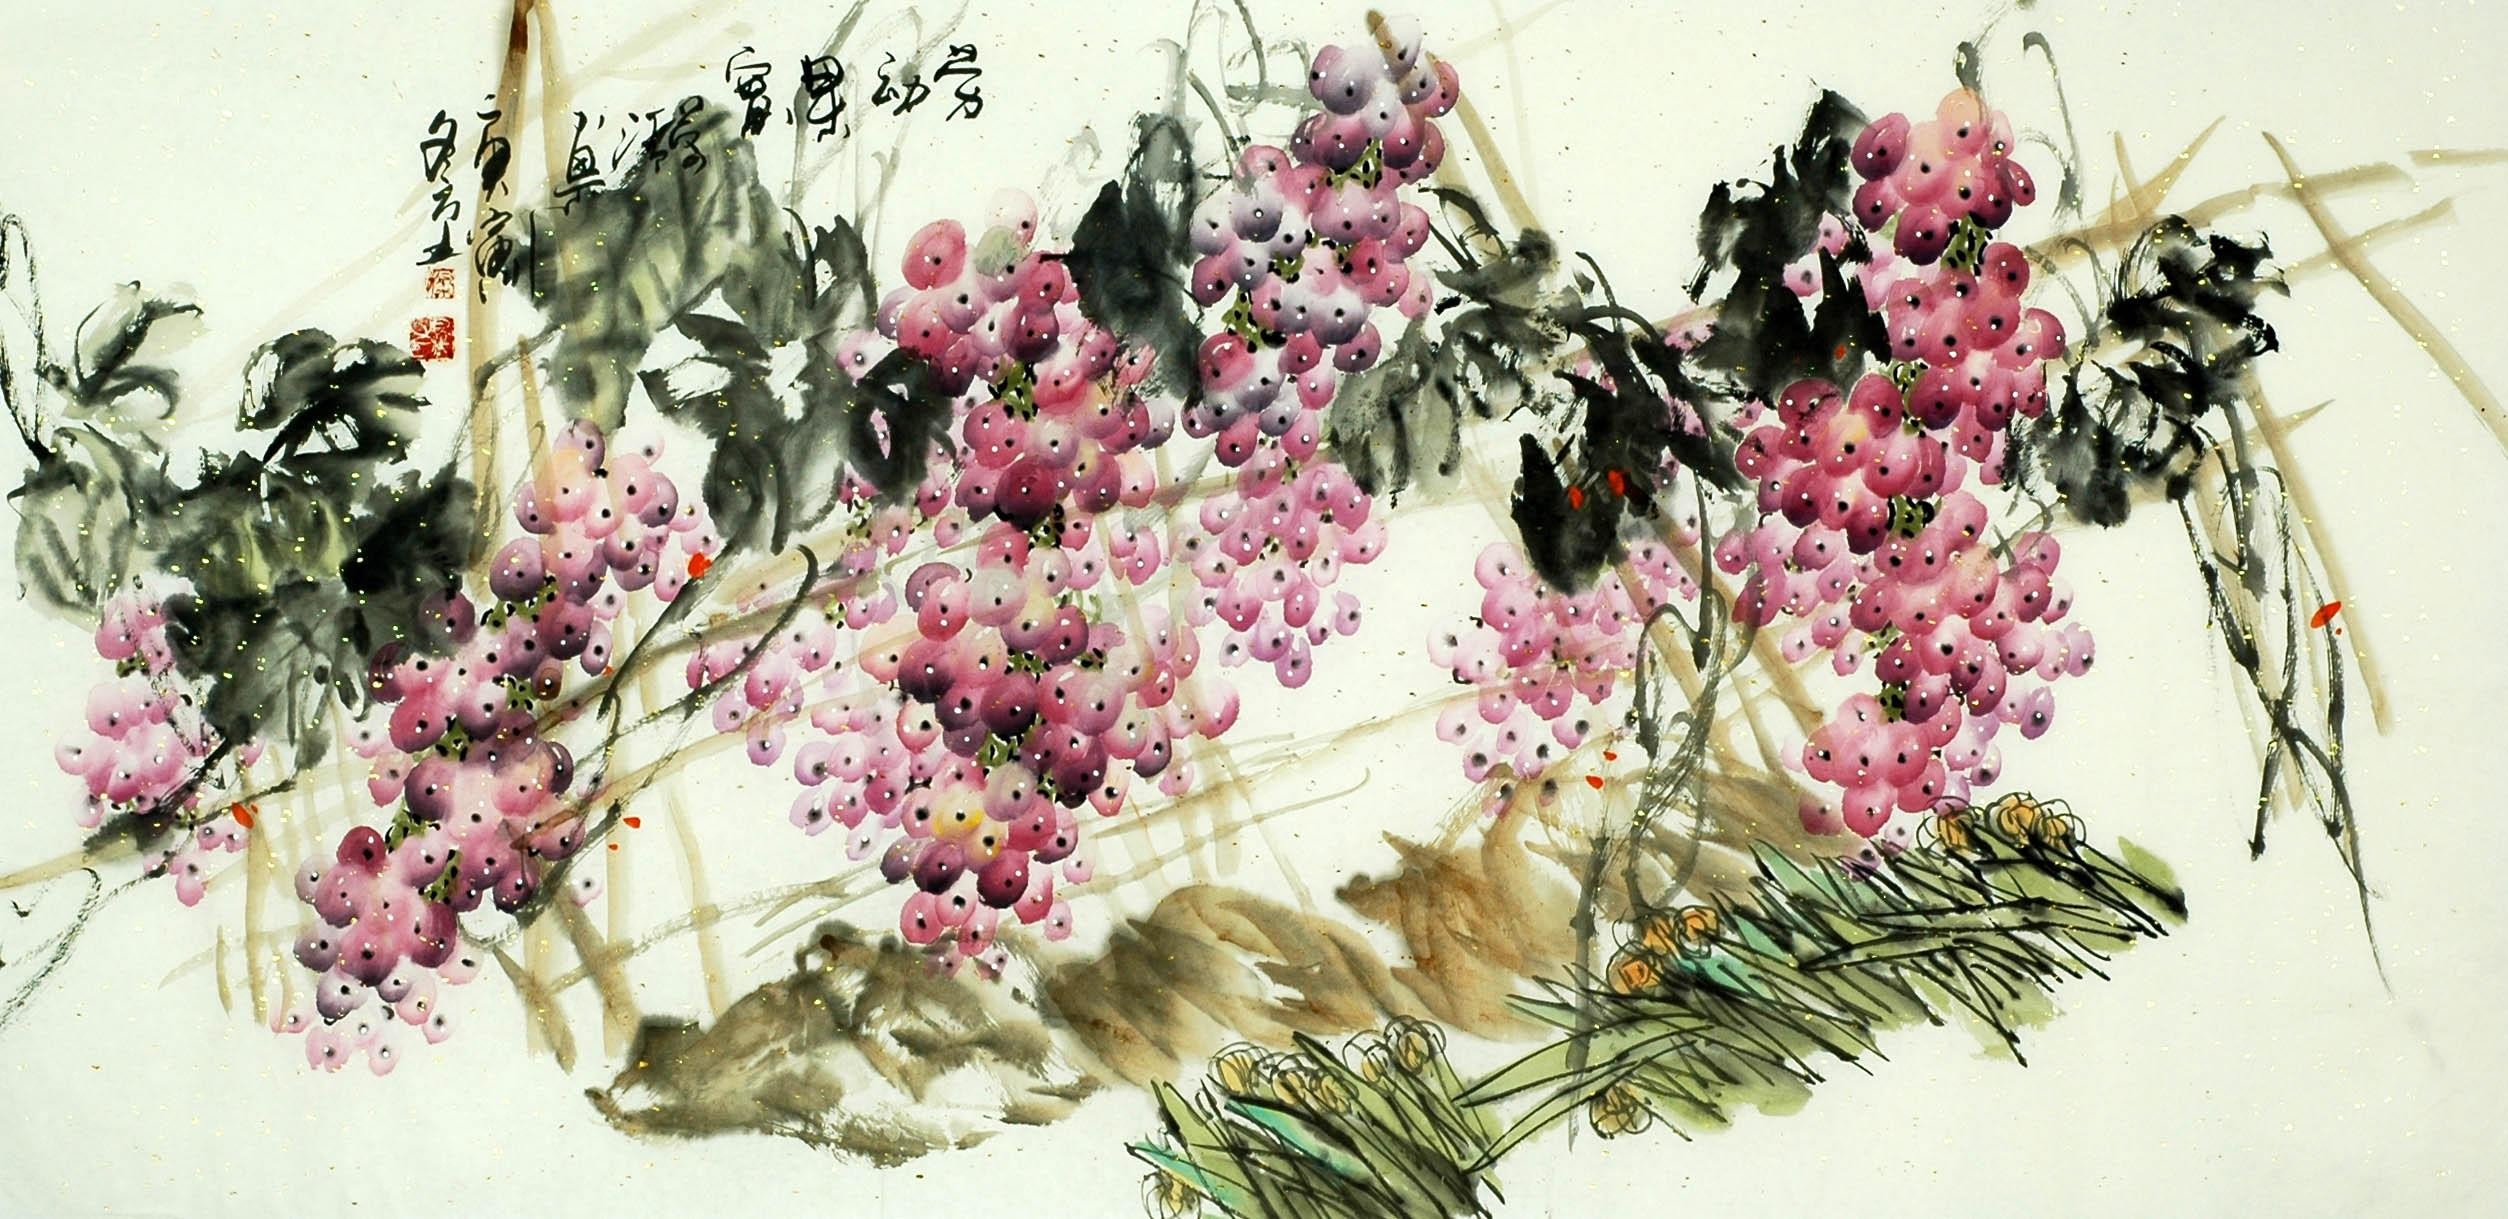 Chinese Grapes Painting - CNAG008260